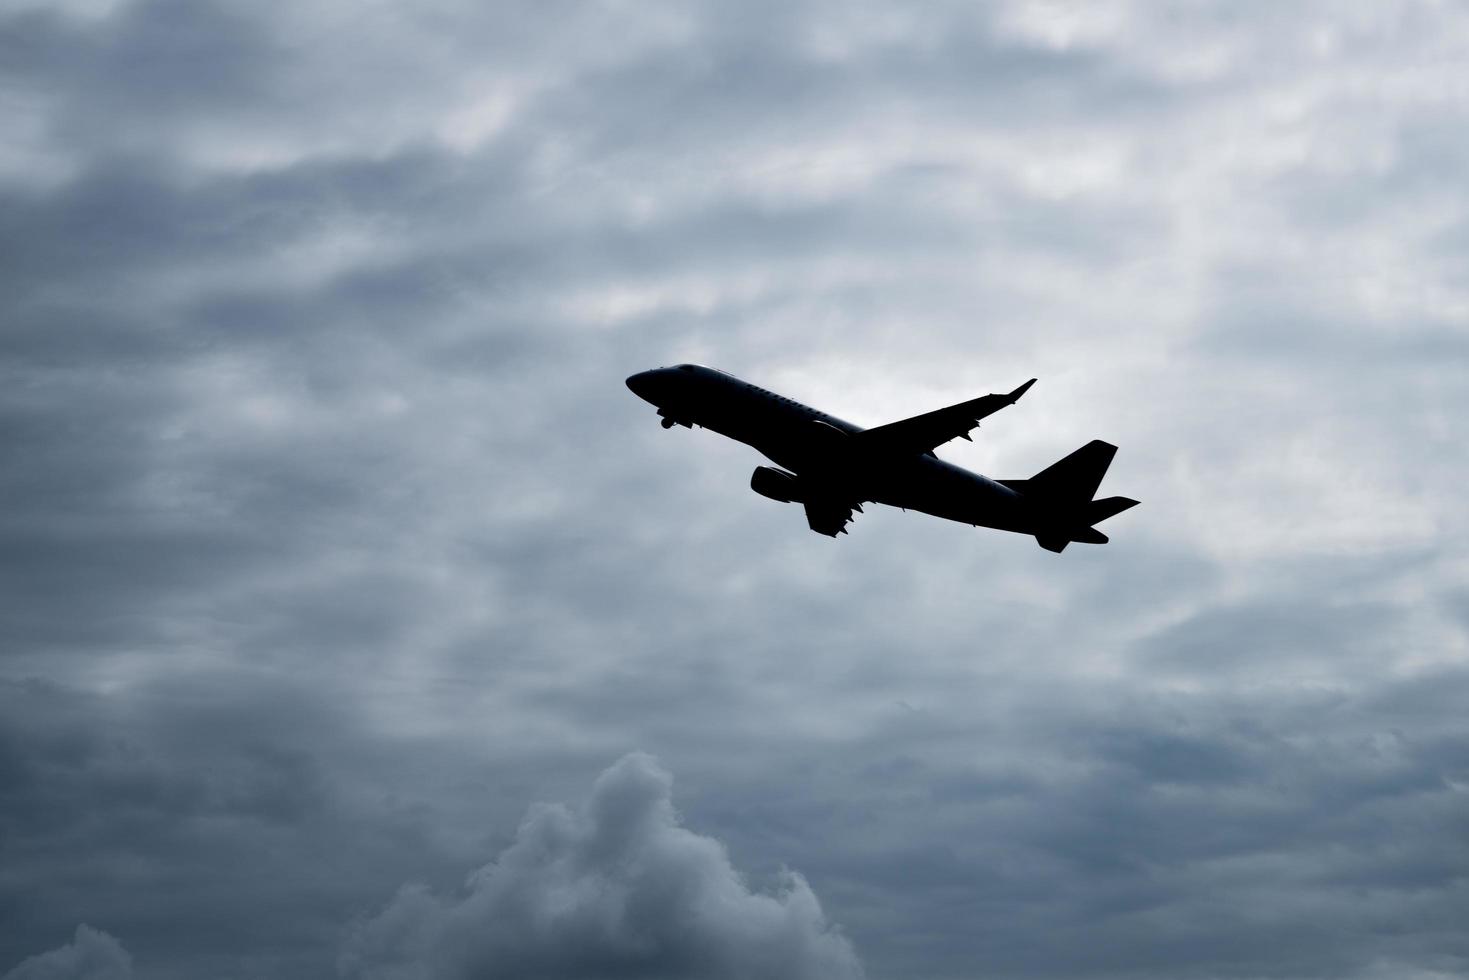 la silhouette de l'avion survole le ciel avec un fond nuageux couvert. photo